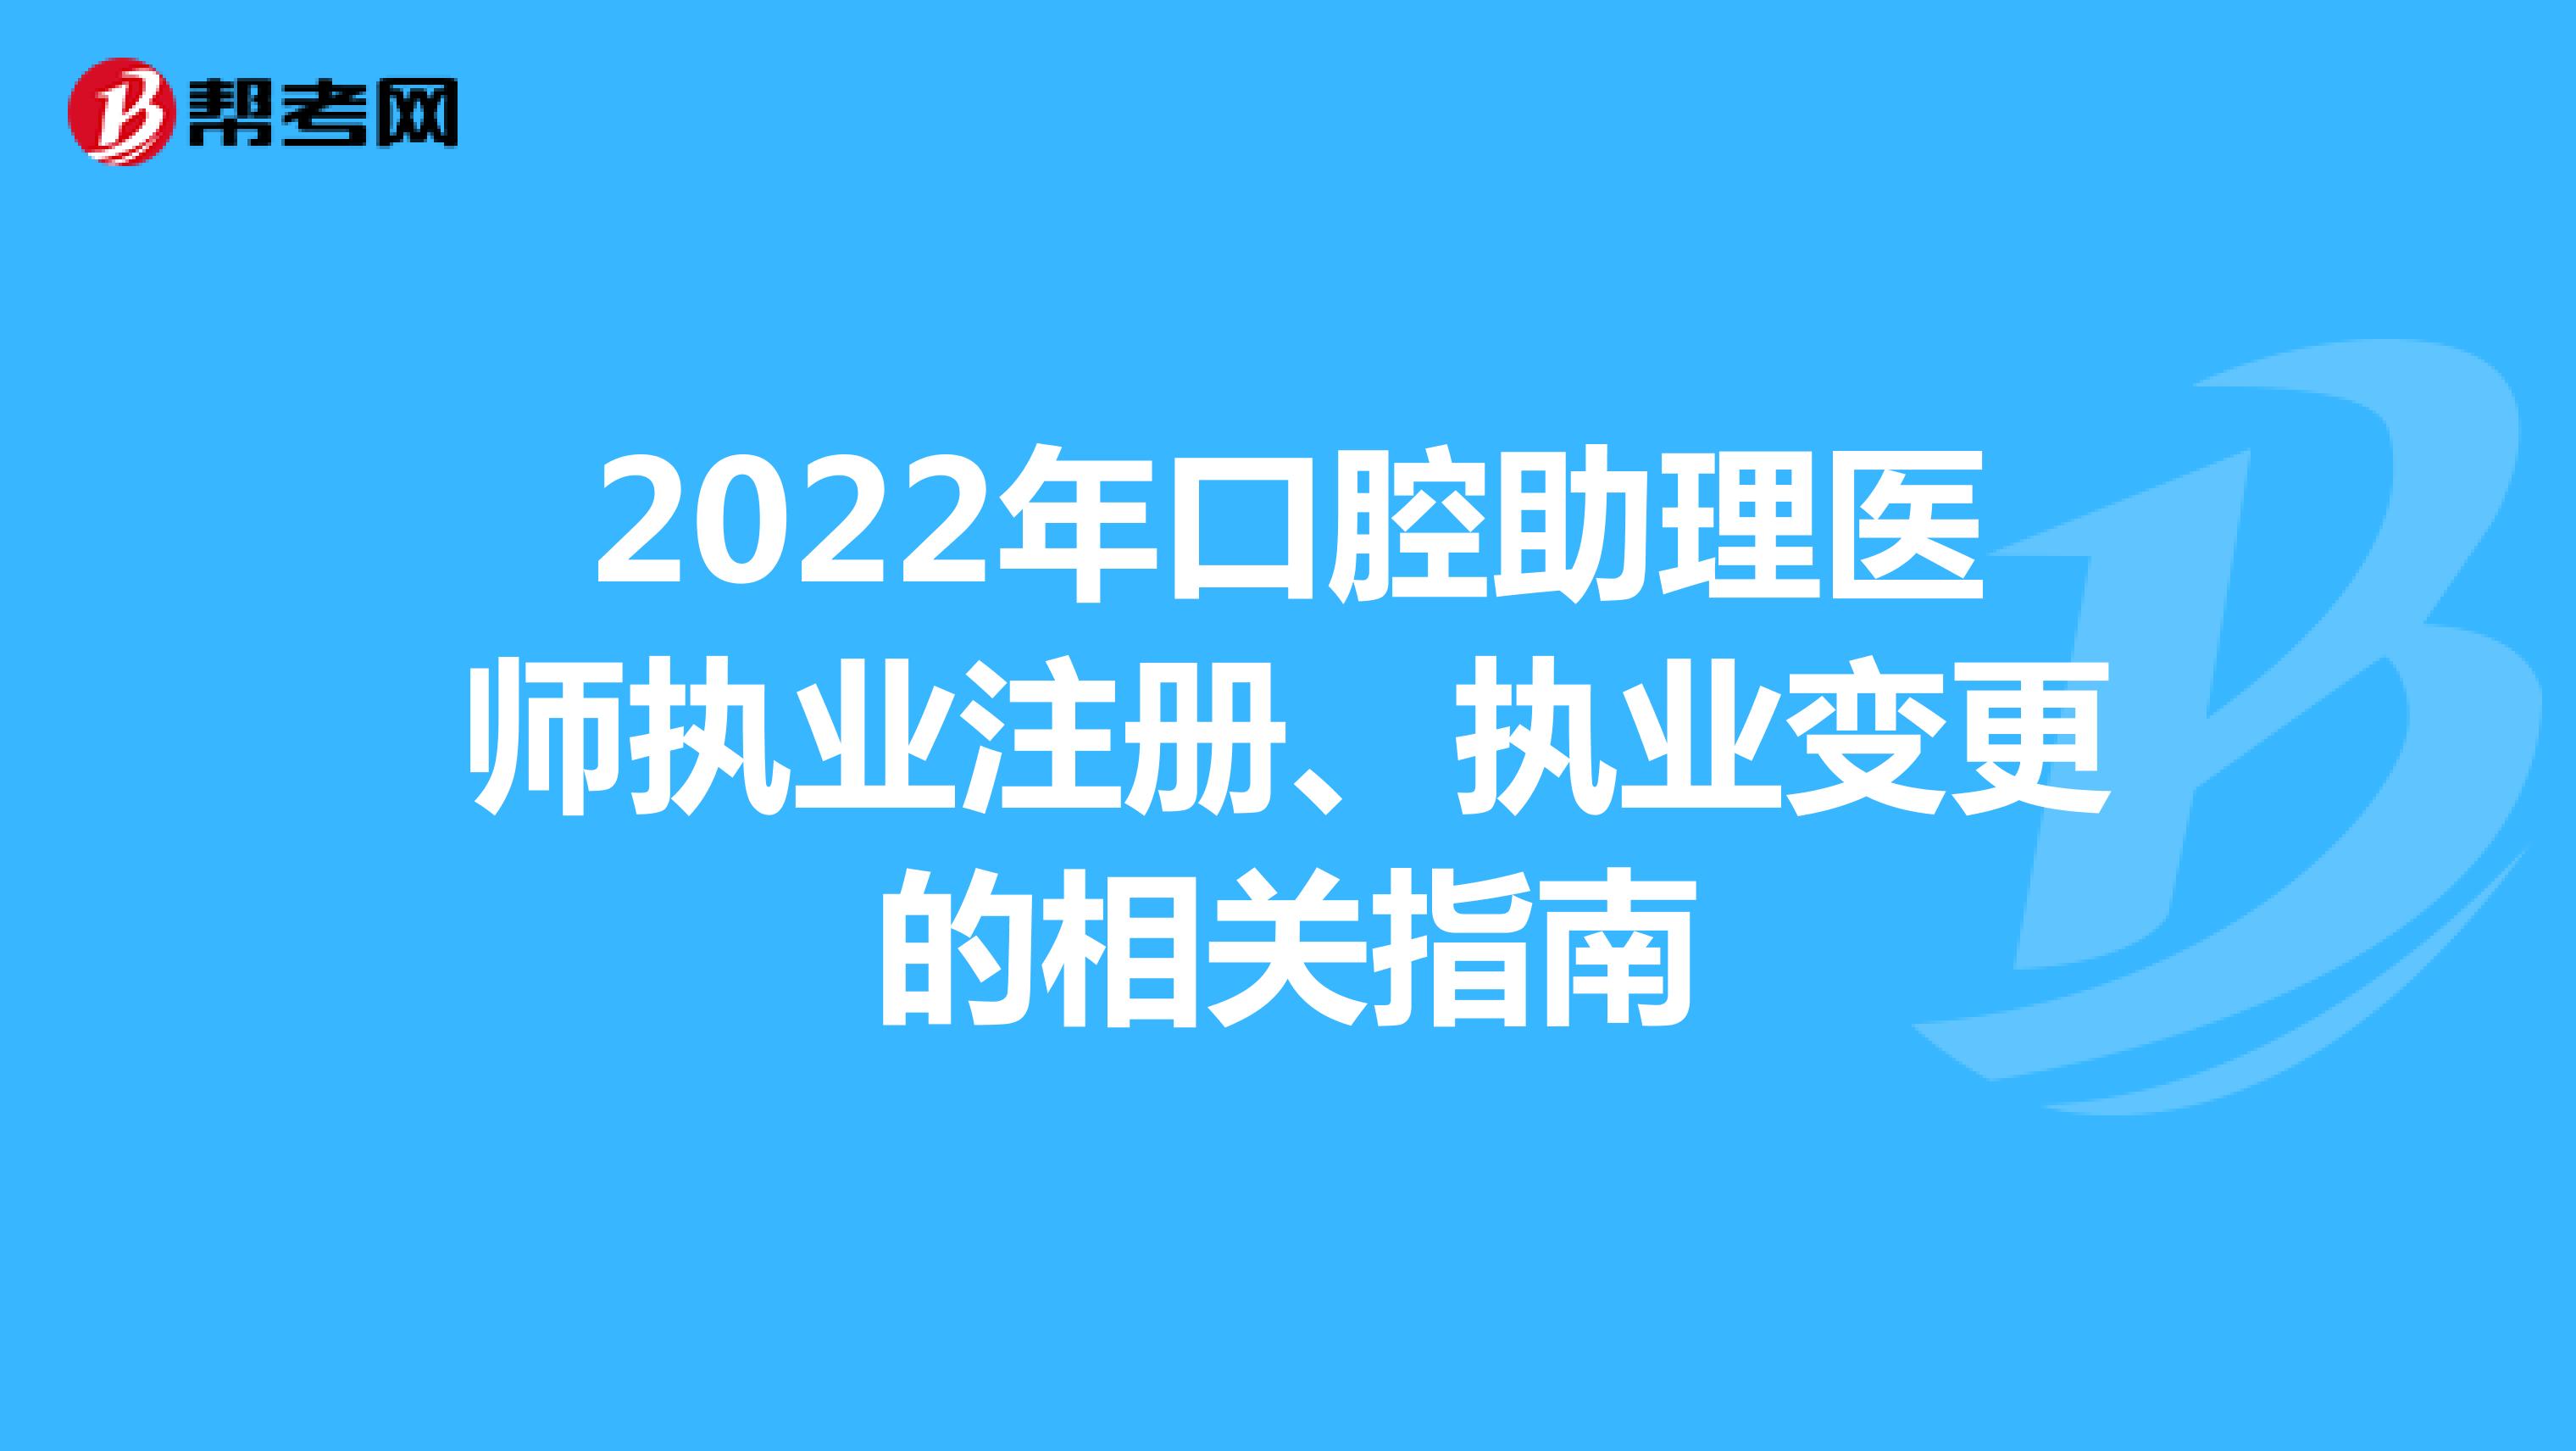 2022年口腔助理医师执业注册、执业变更的相关指南